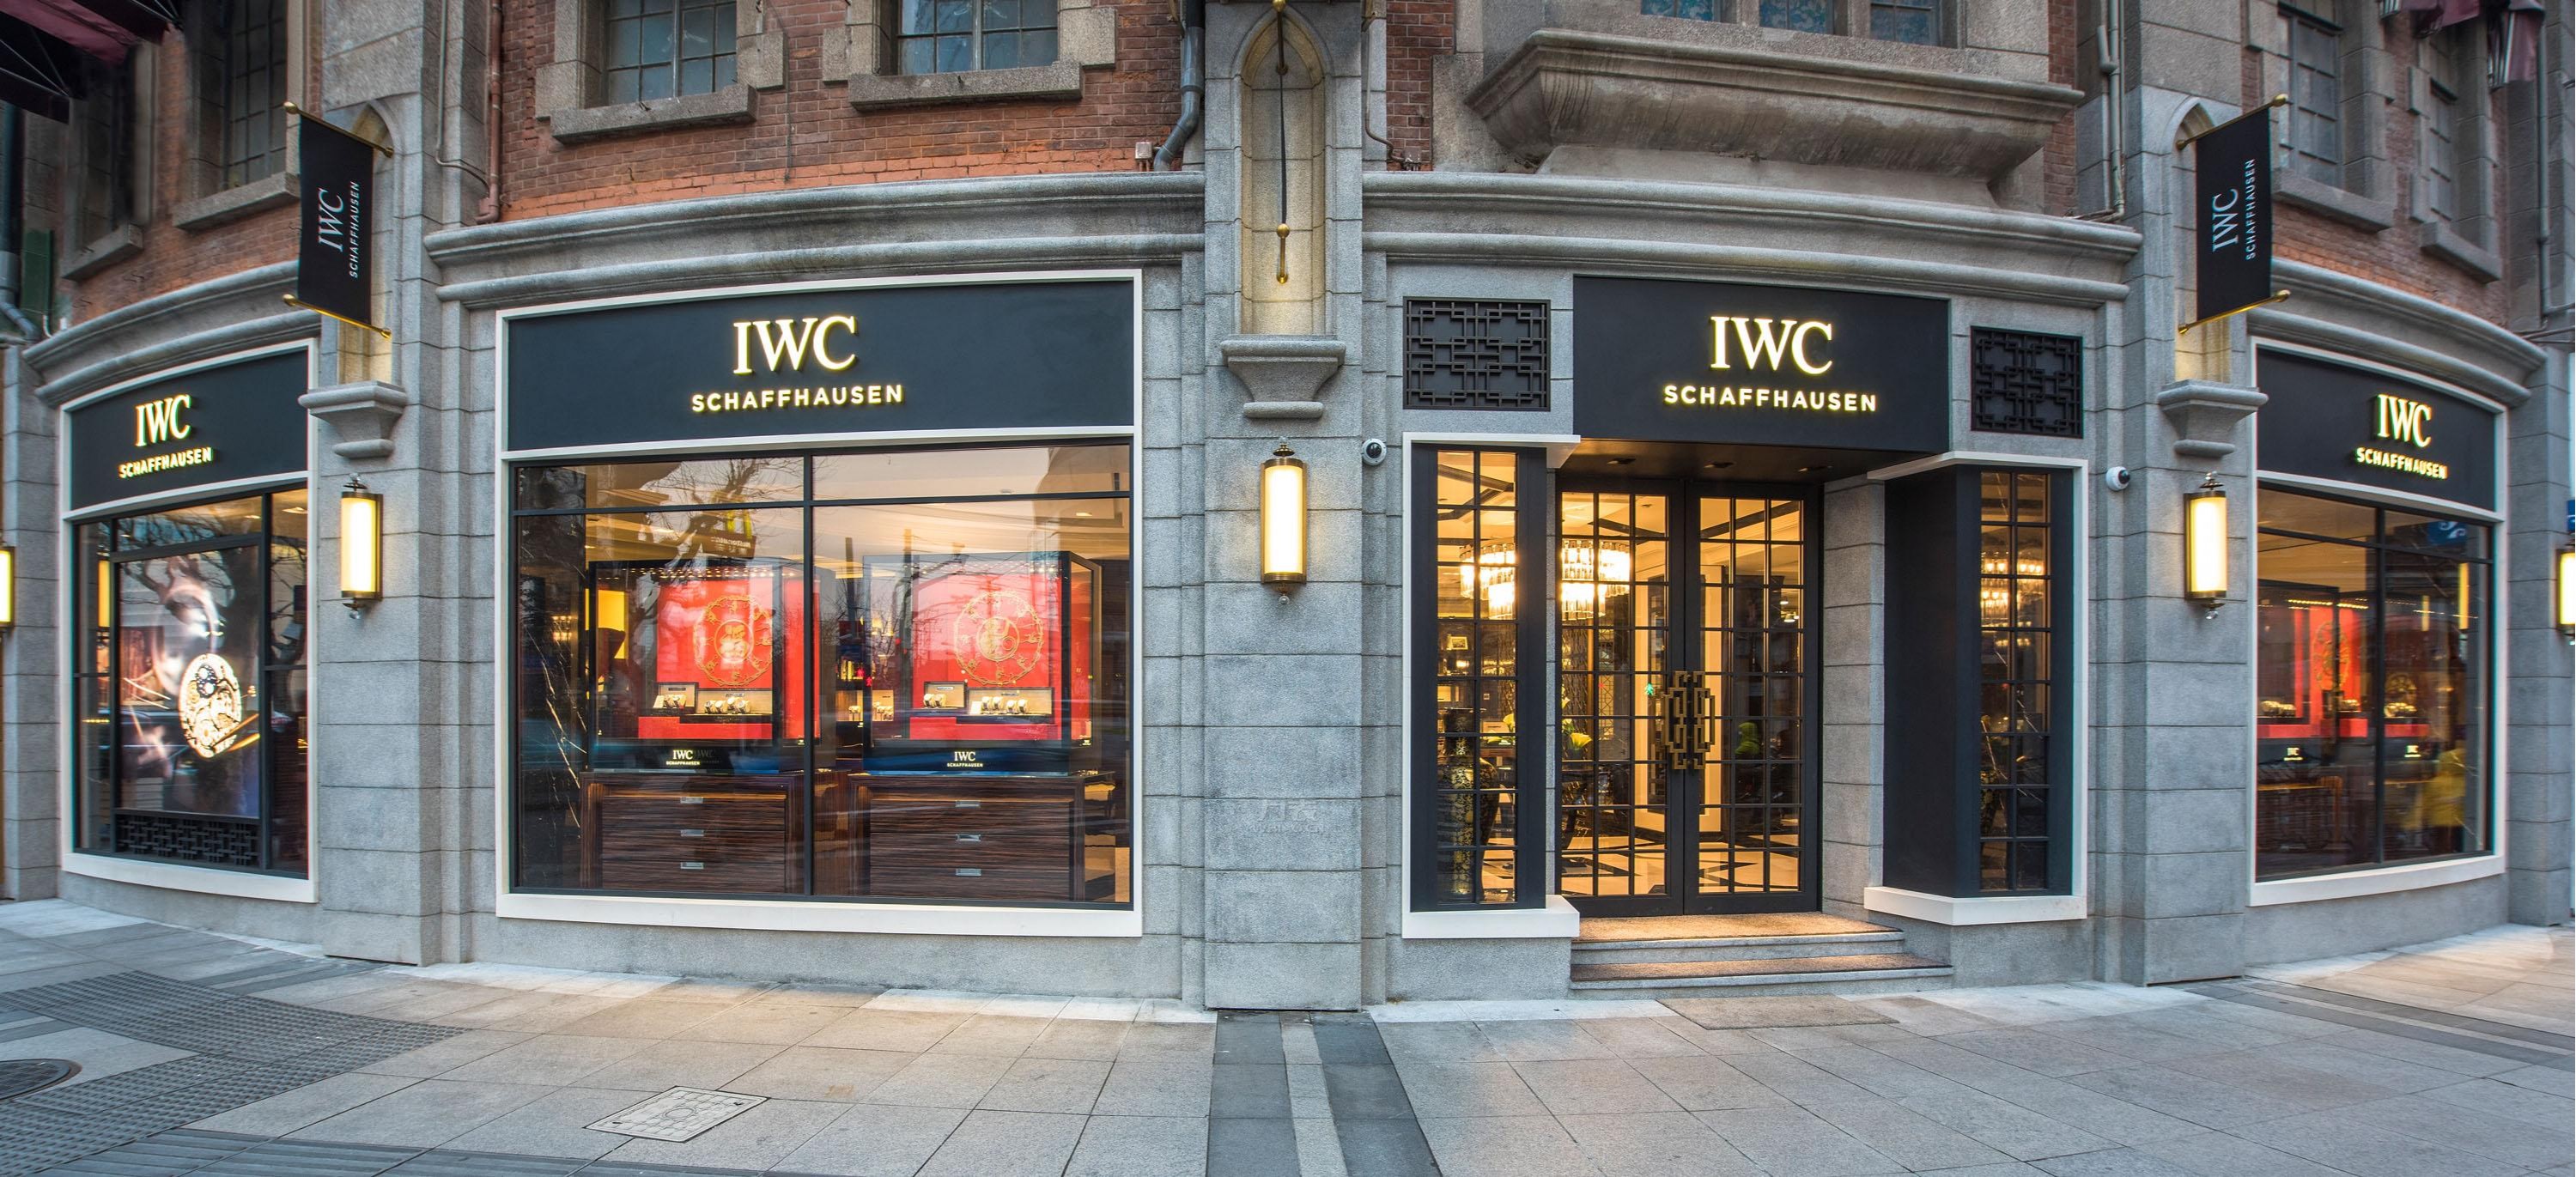 IWC万国表上海南京西路旗舰店全新开幕